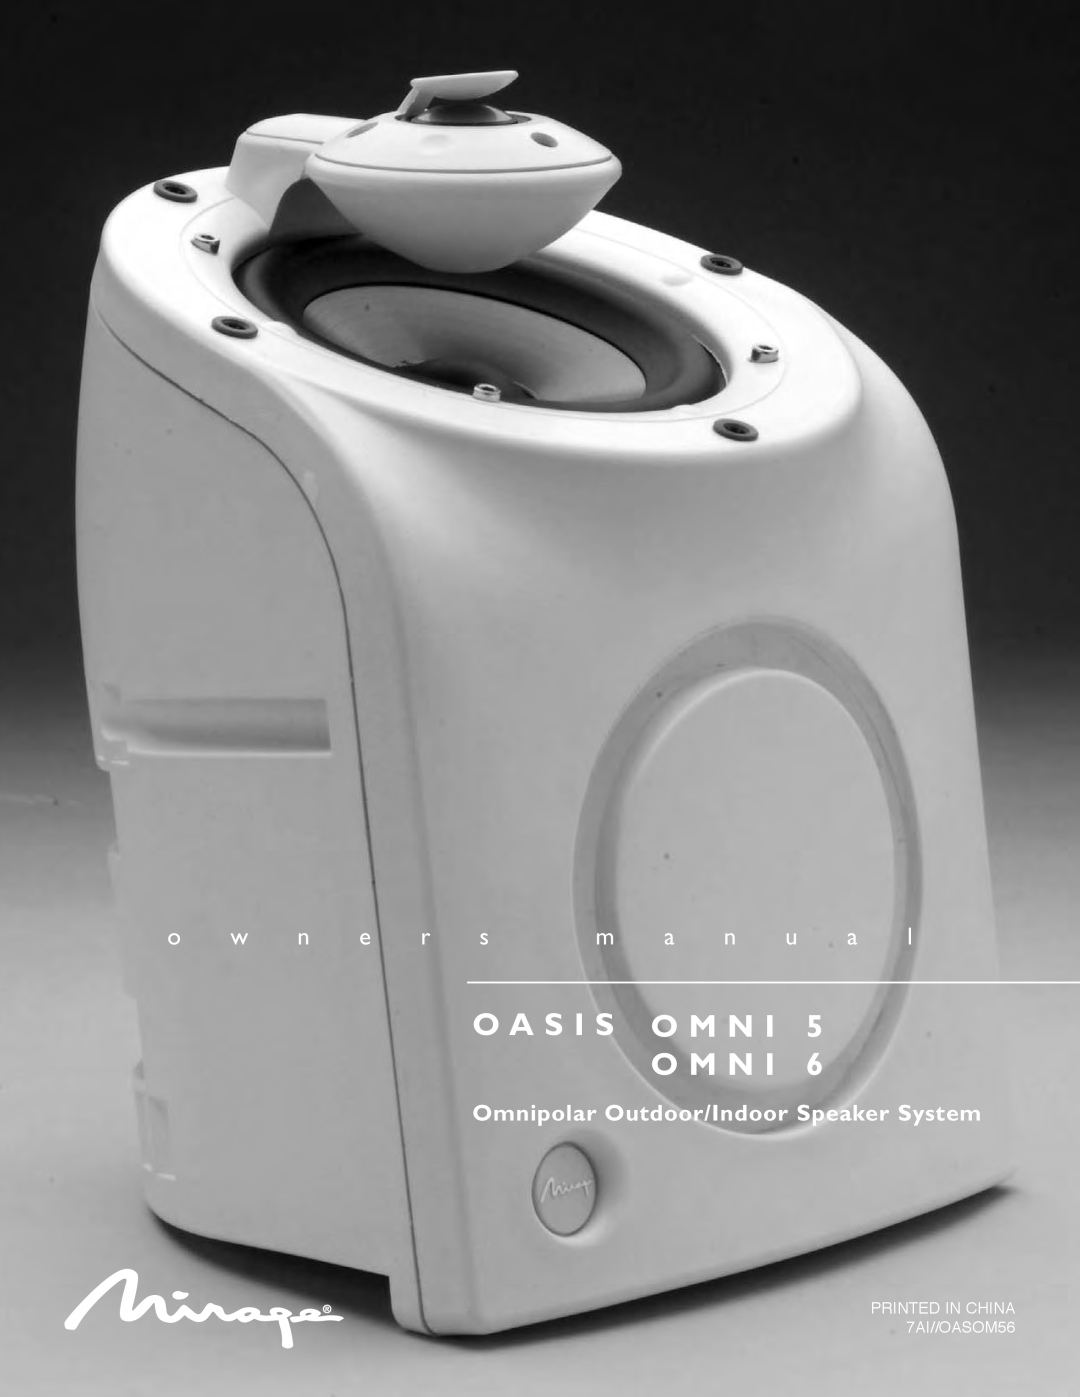 Mirage Loudspeakers OMNI 6 owner manual O A S I S O M N, o w n e r s m a n u a l, Omnipolar Outdoor/Indoor Speaker System 